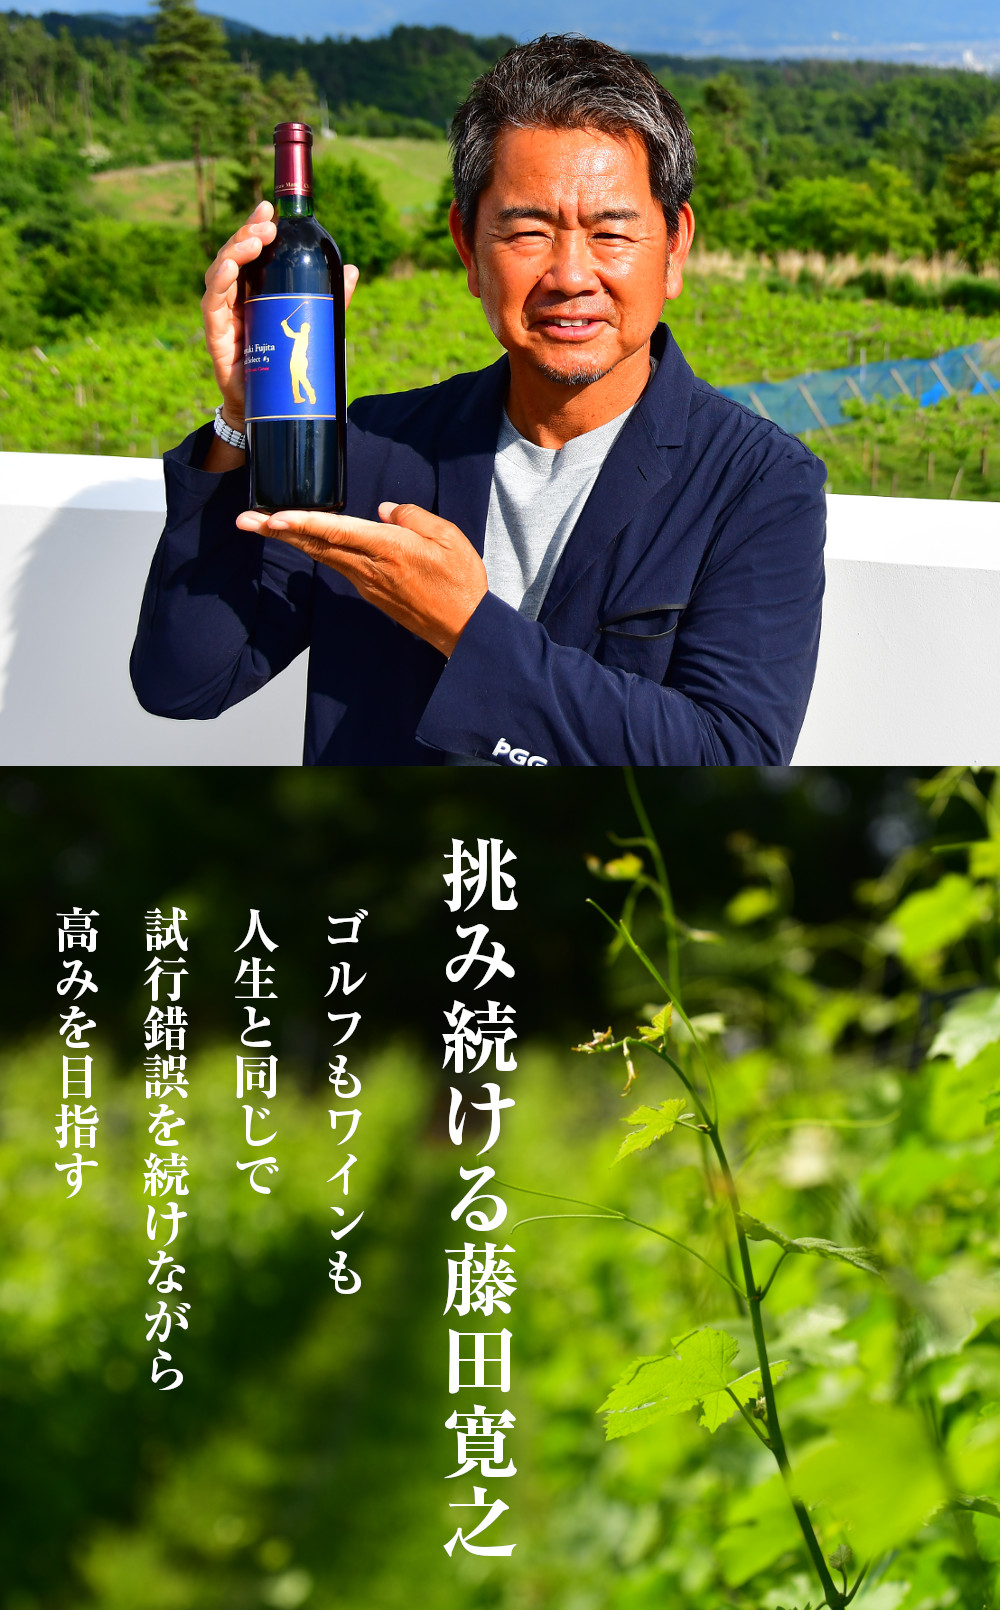 挑み続ける藤田寛之 ゴルフもワインも人生と同じで試行錯誤を続けながら高みを目指す